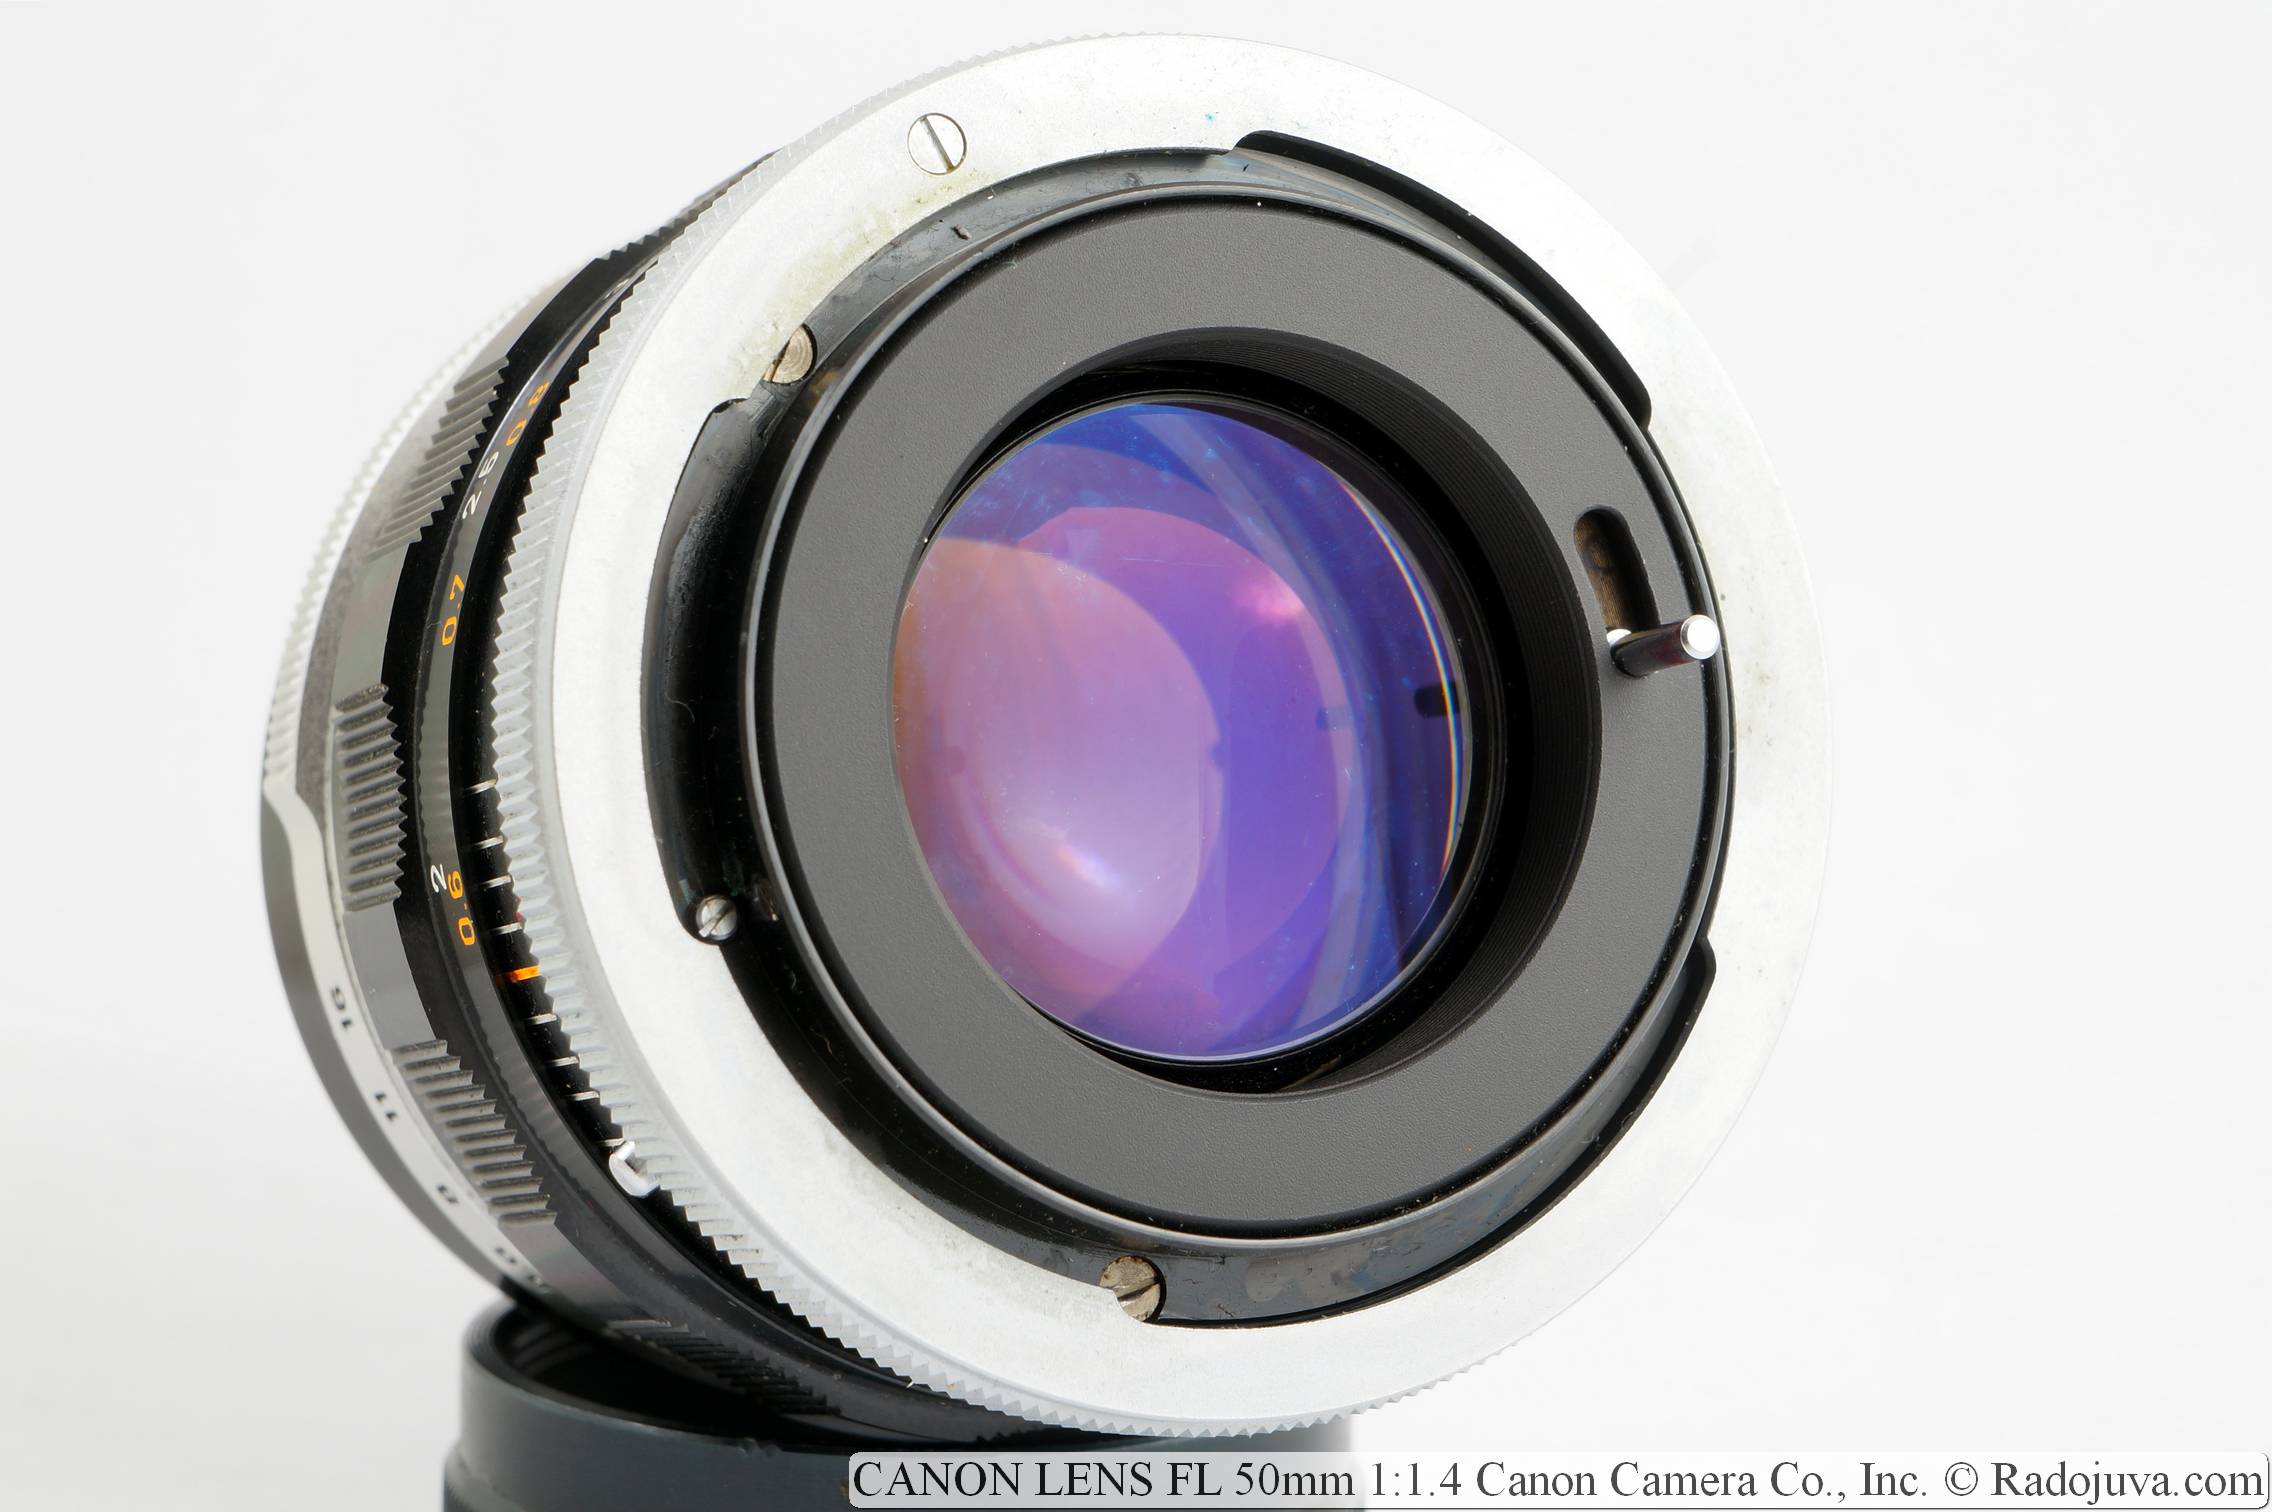 CANON LENS FL 50mm 1:1.4 Canon Camera Co., Inc.